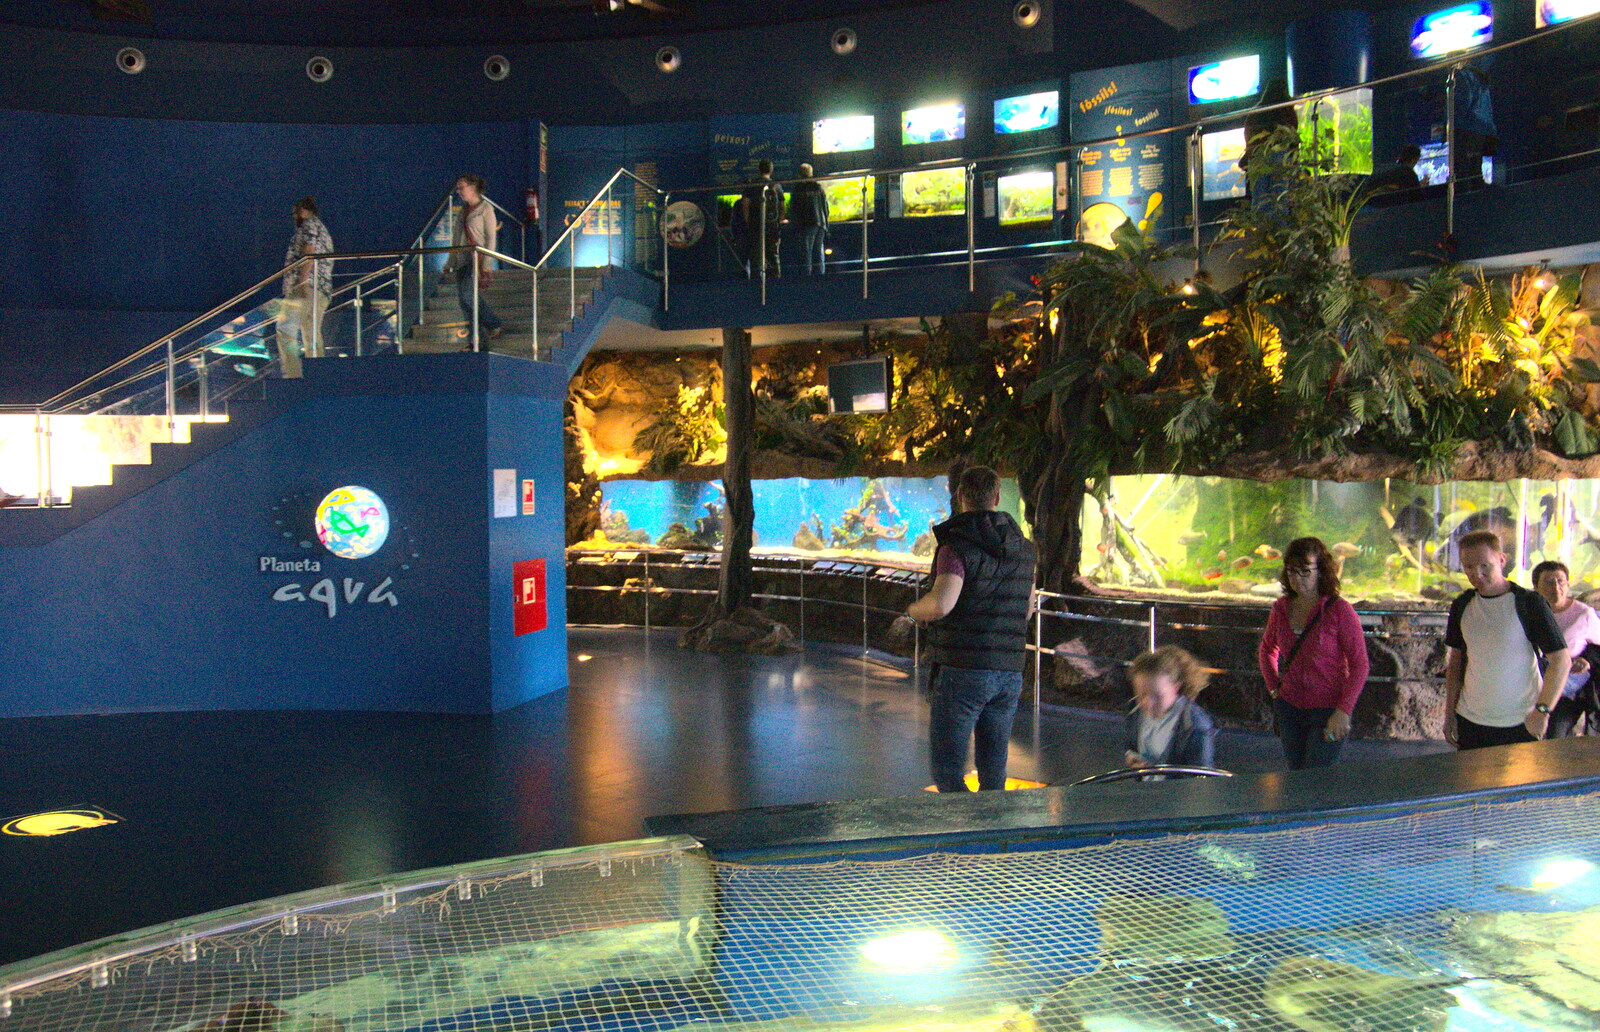 In planeta aqua from L'Aquarium de Barcelona, Port Vell, Catalonia, Spain - 23rd October 2017